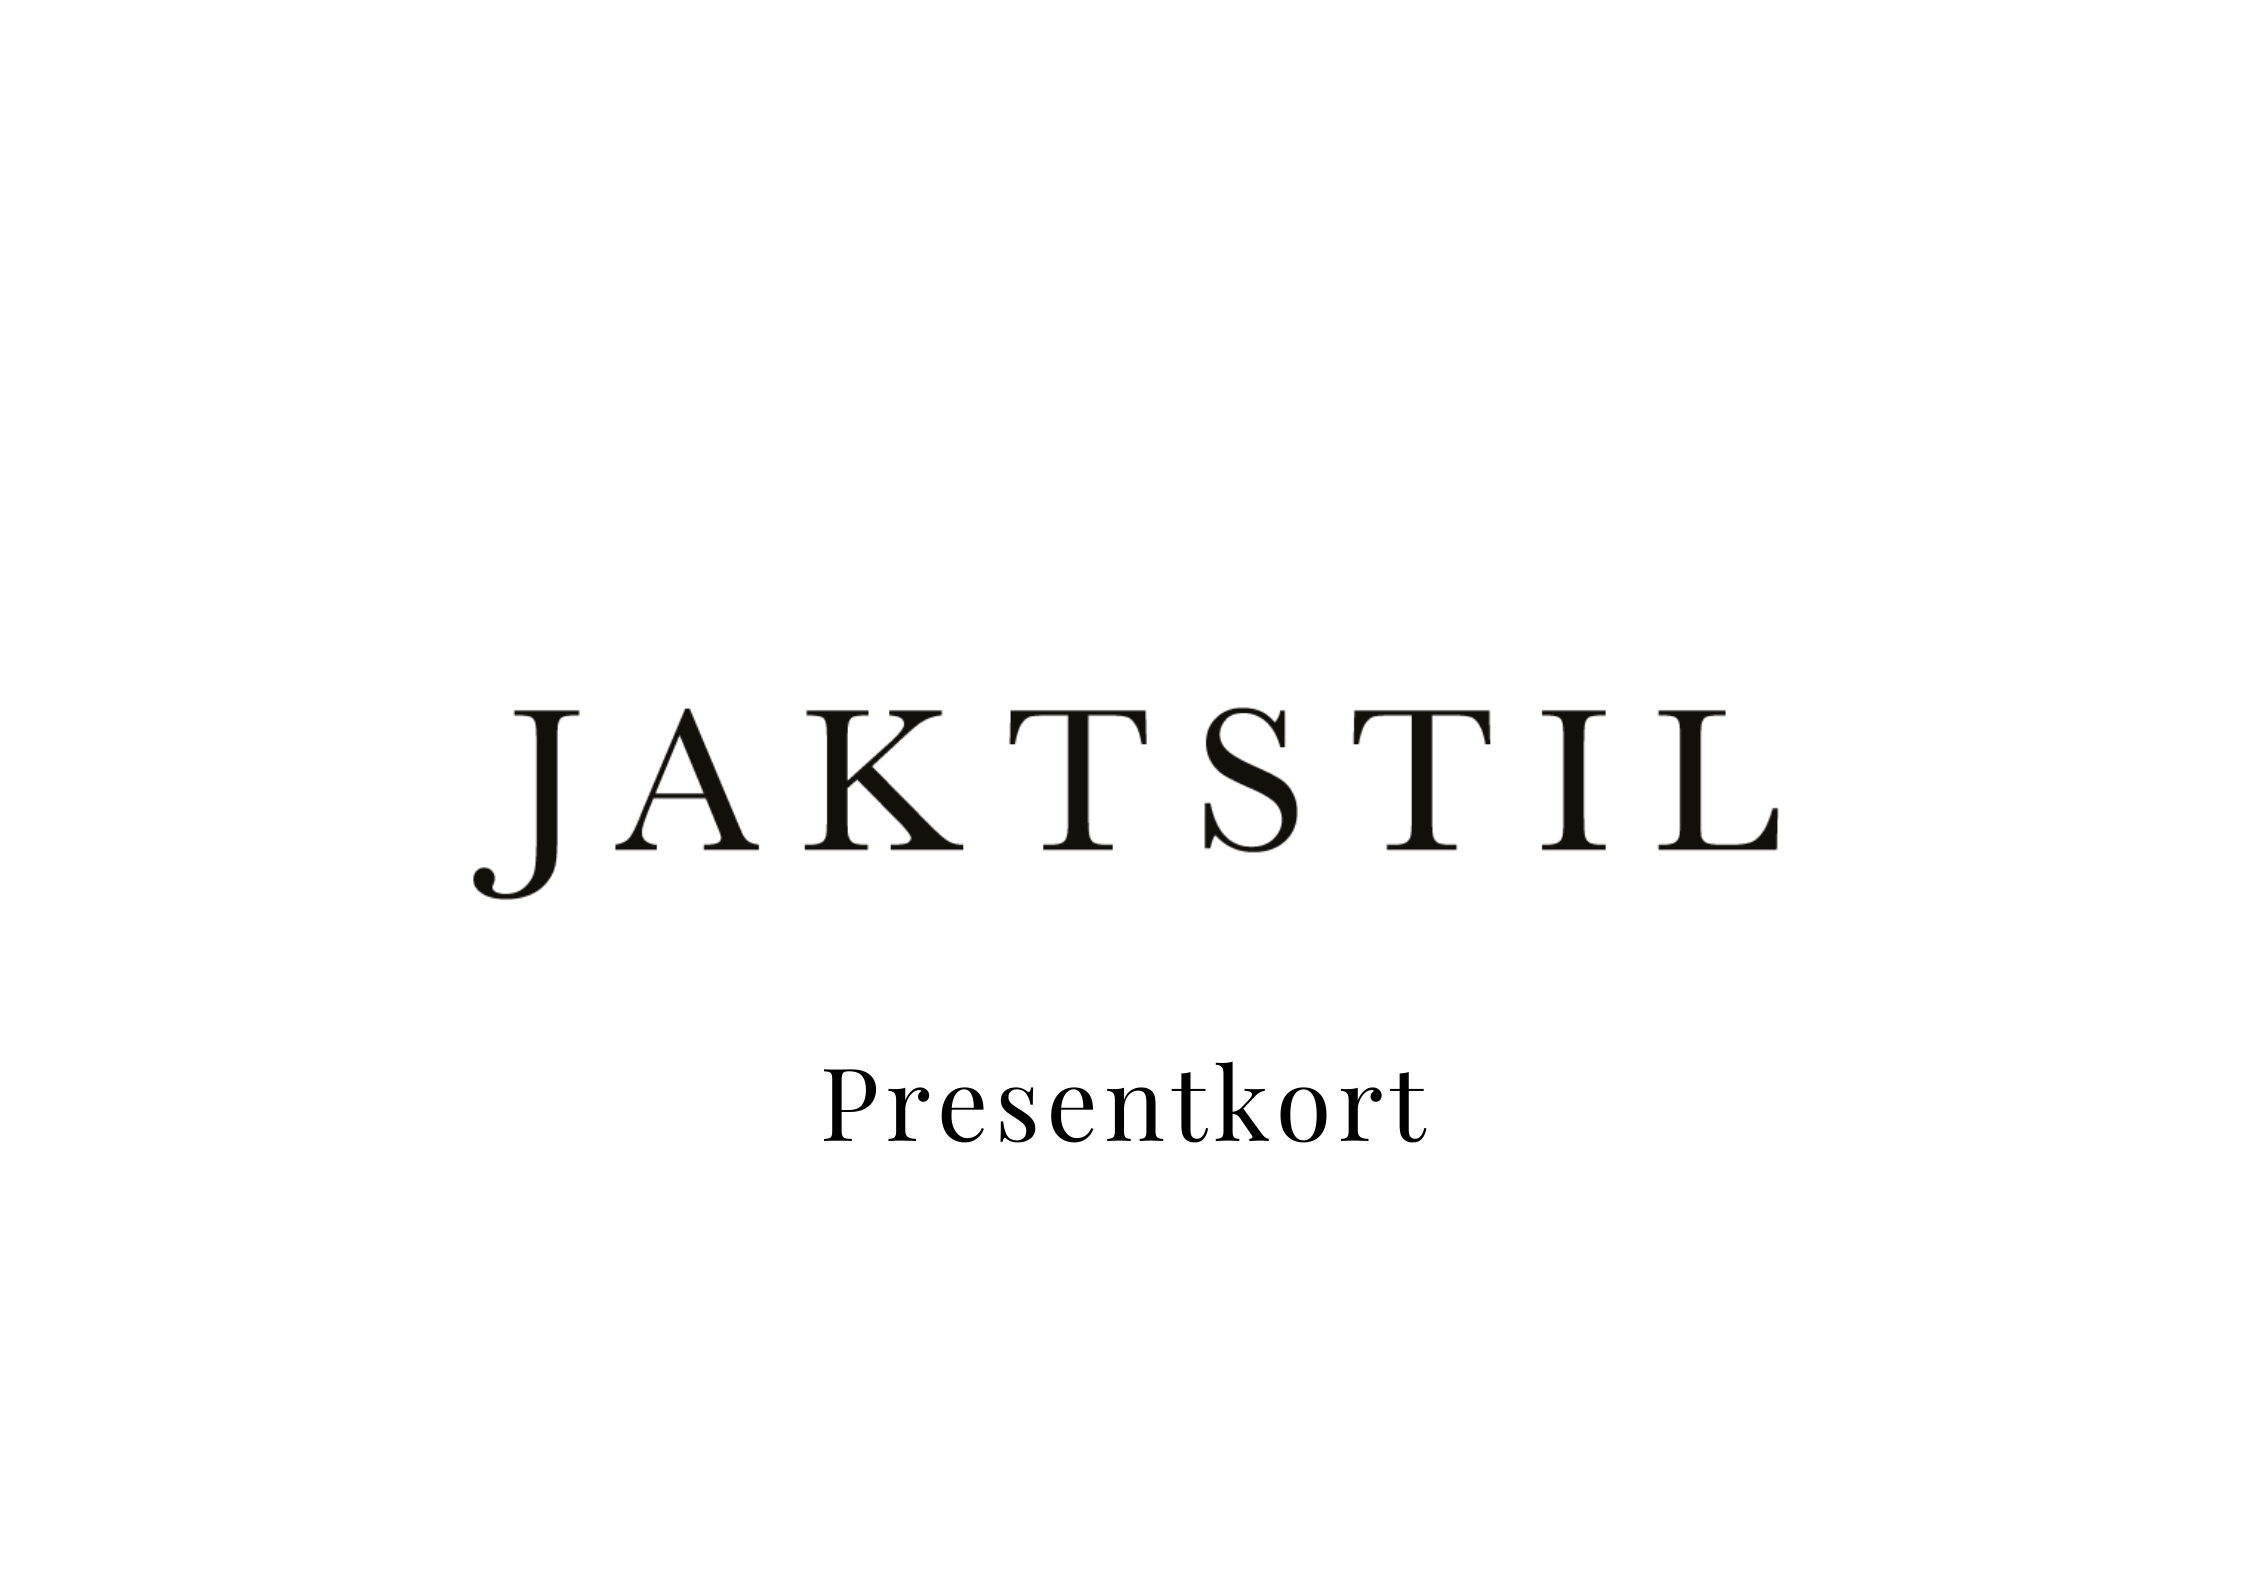 Jaktstil Presentkort - Jaktstil.se